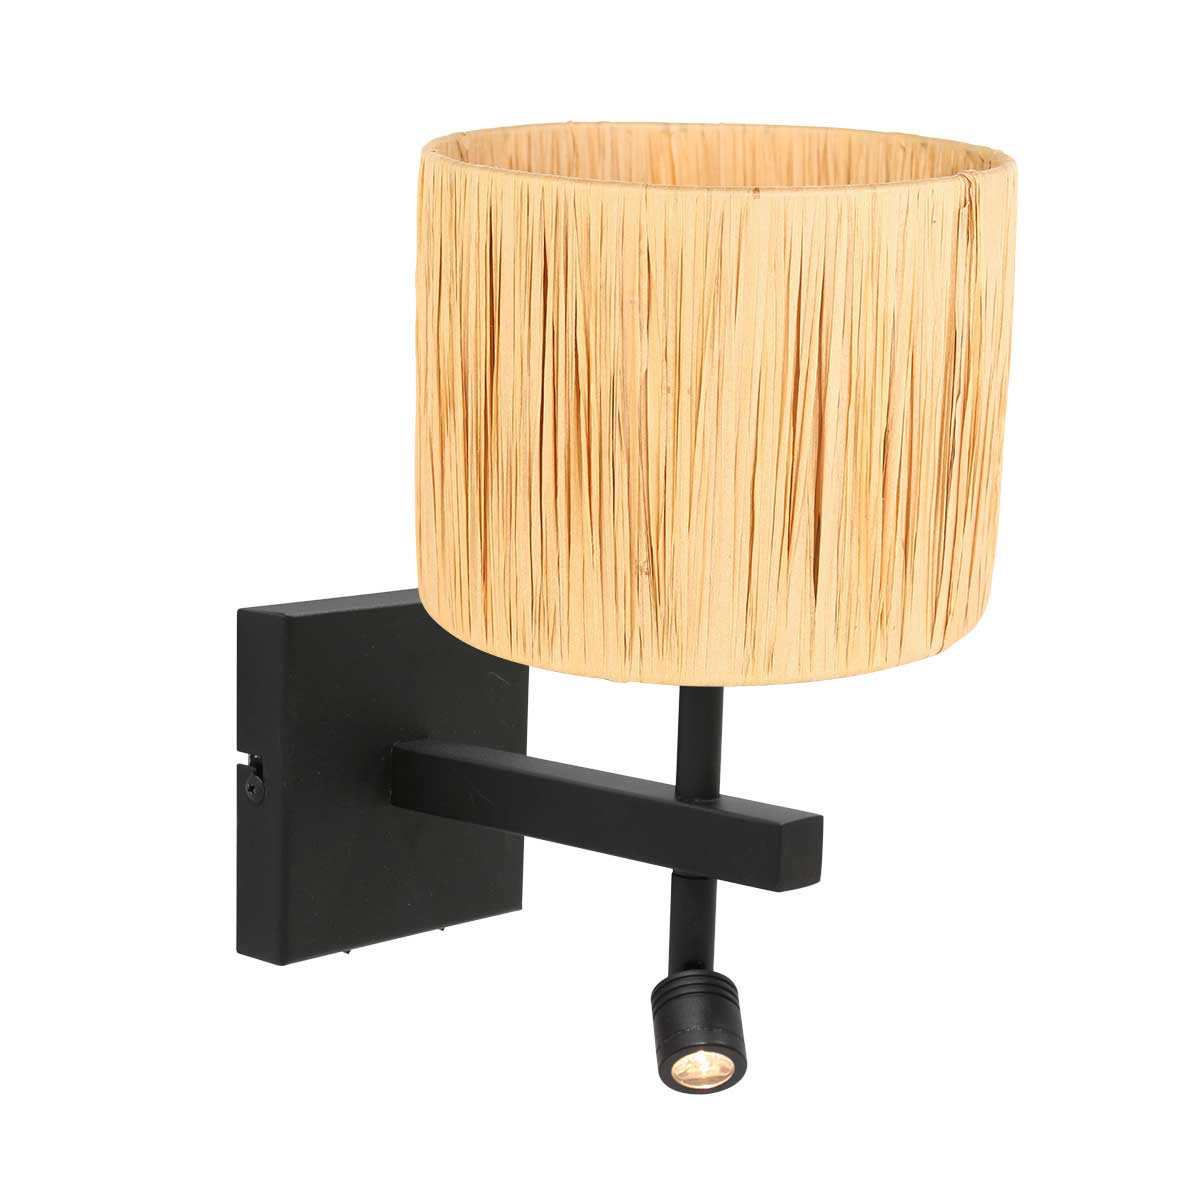 wandlamp-zwart-met-houtkleurige-kap-wandlamp-steinhauer-stang-naturel-en-zwart-3702zw